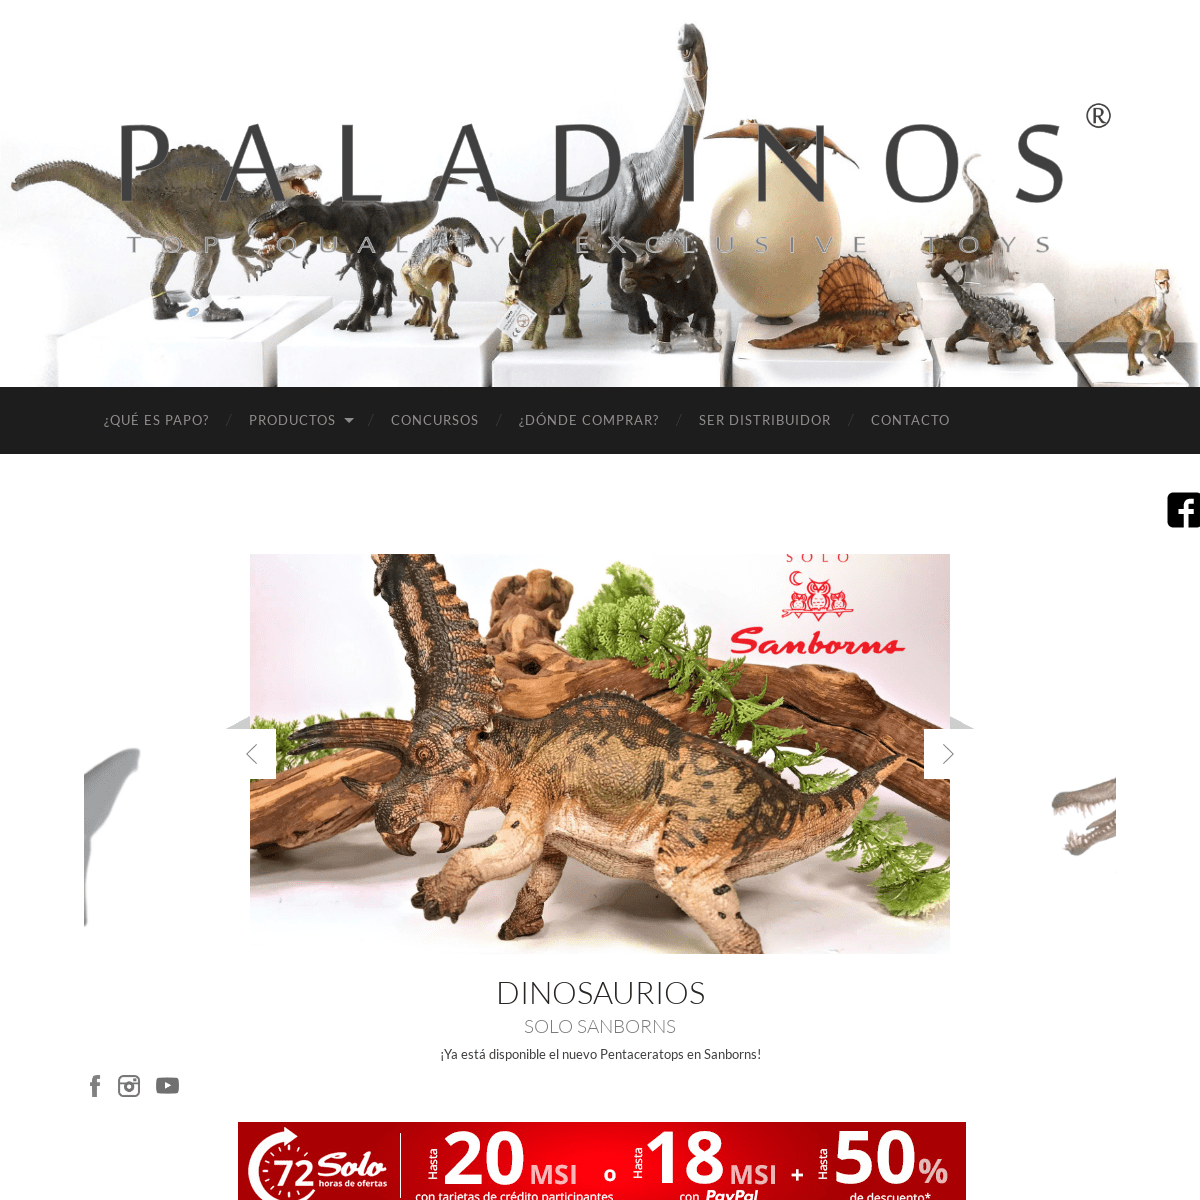 A complete backup of paladinos-mexico.com